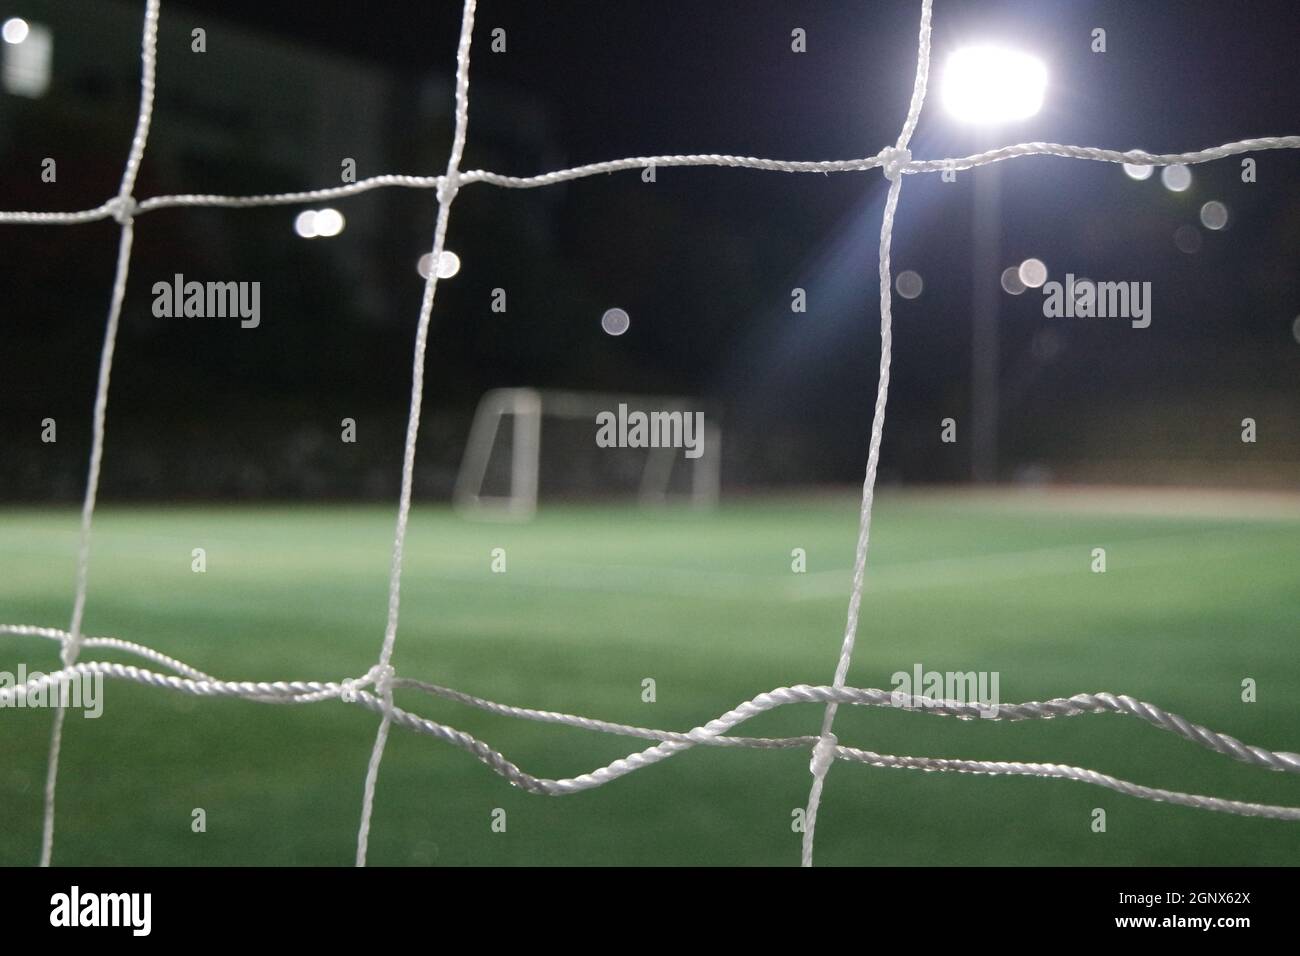 Nachtansicht eines Fußballtor-Netzes unter Flutlicht. Nahaufnahme des Tornetzes auf einem Fußballplatz Stockfoto